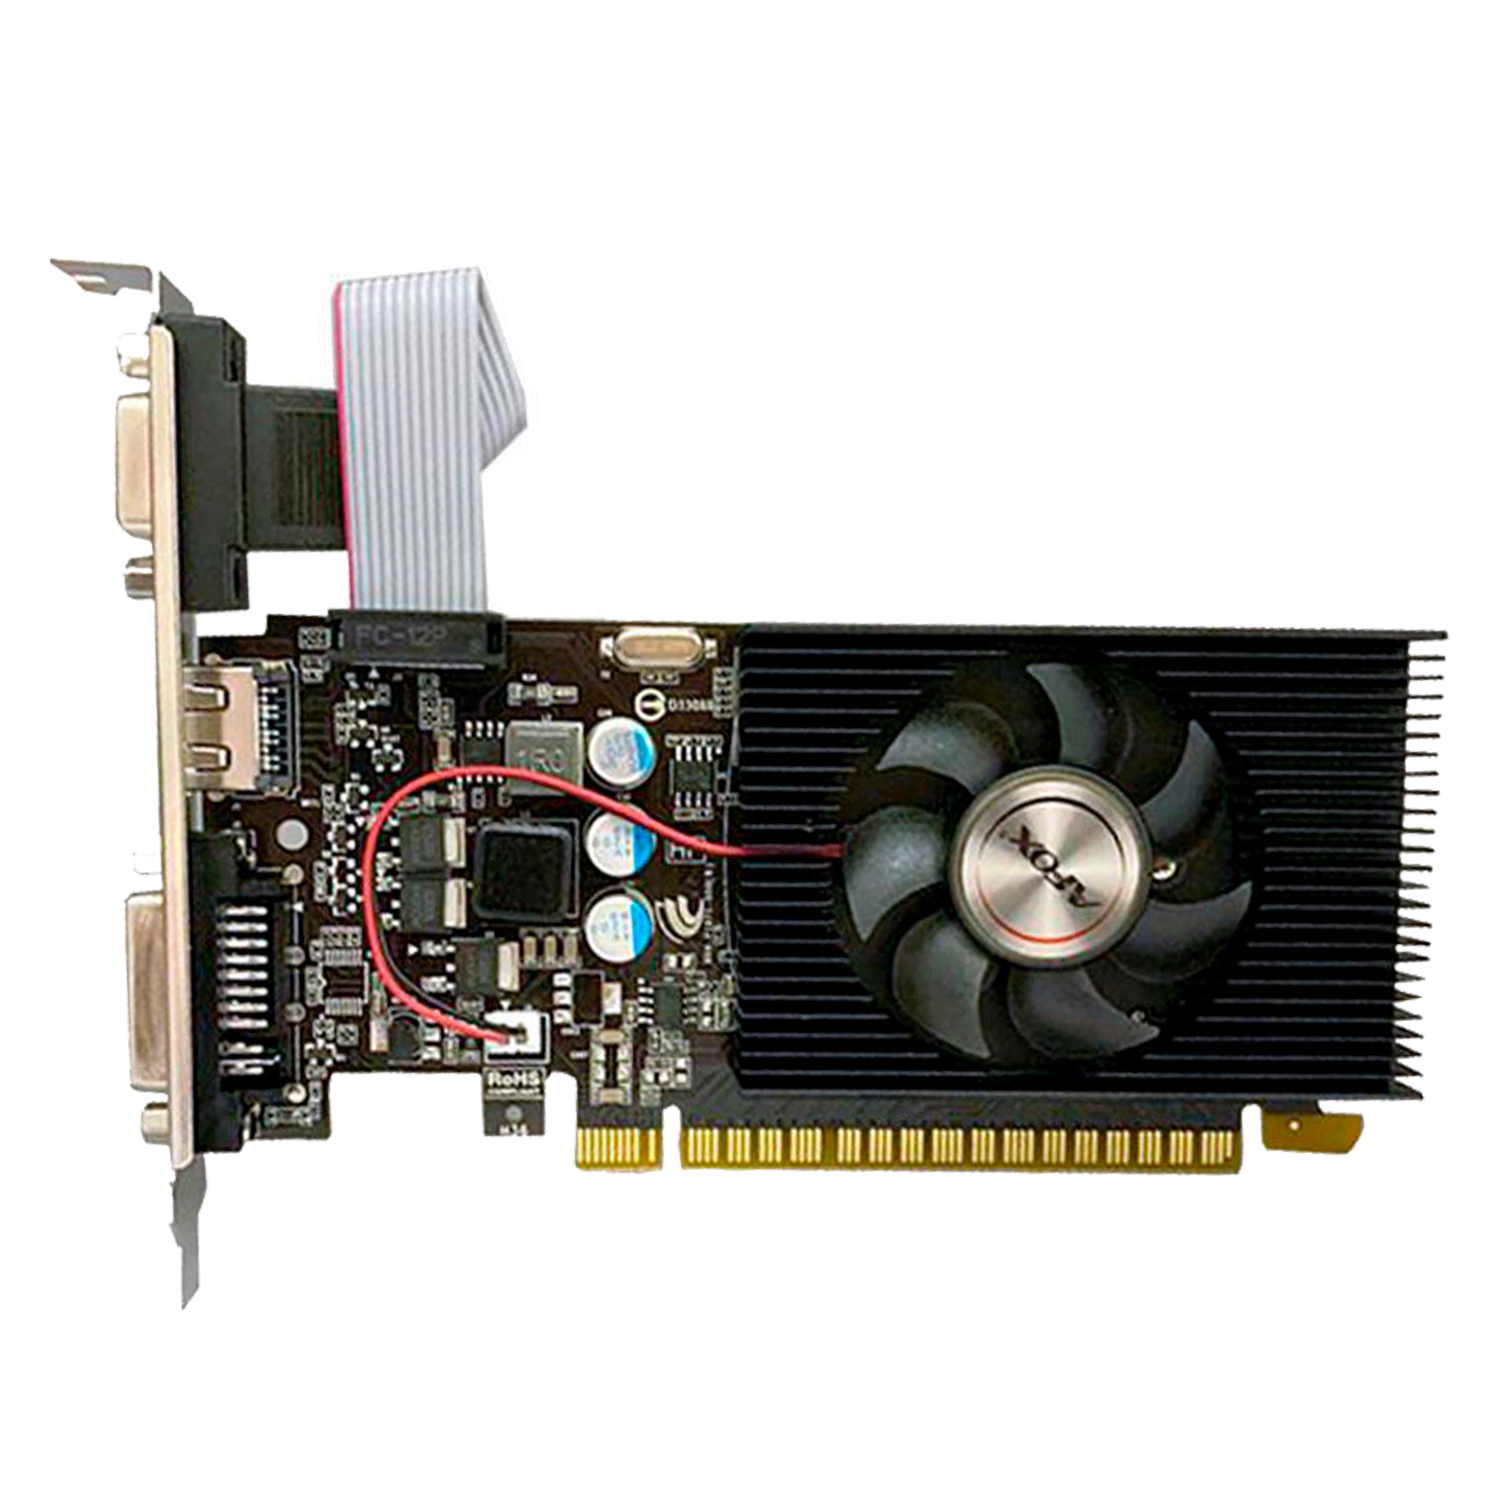 Placa de Vídeo Afox NVIDIA Geforce GT-420 2GB DDR3 - AF420-2048D3L2